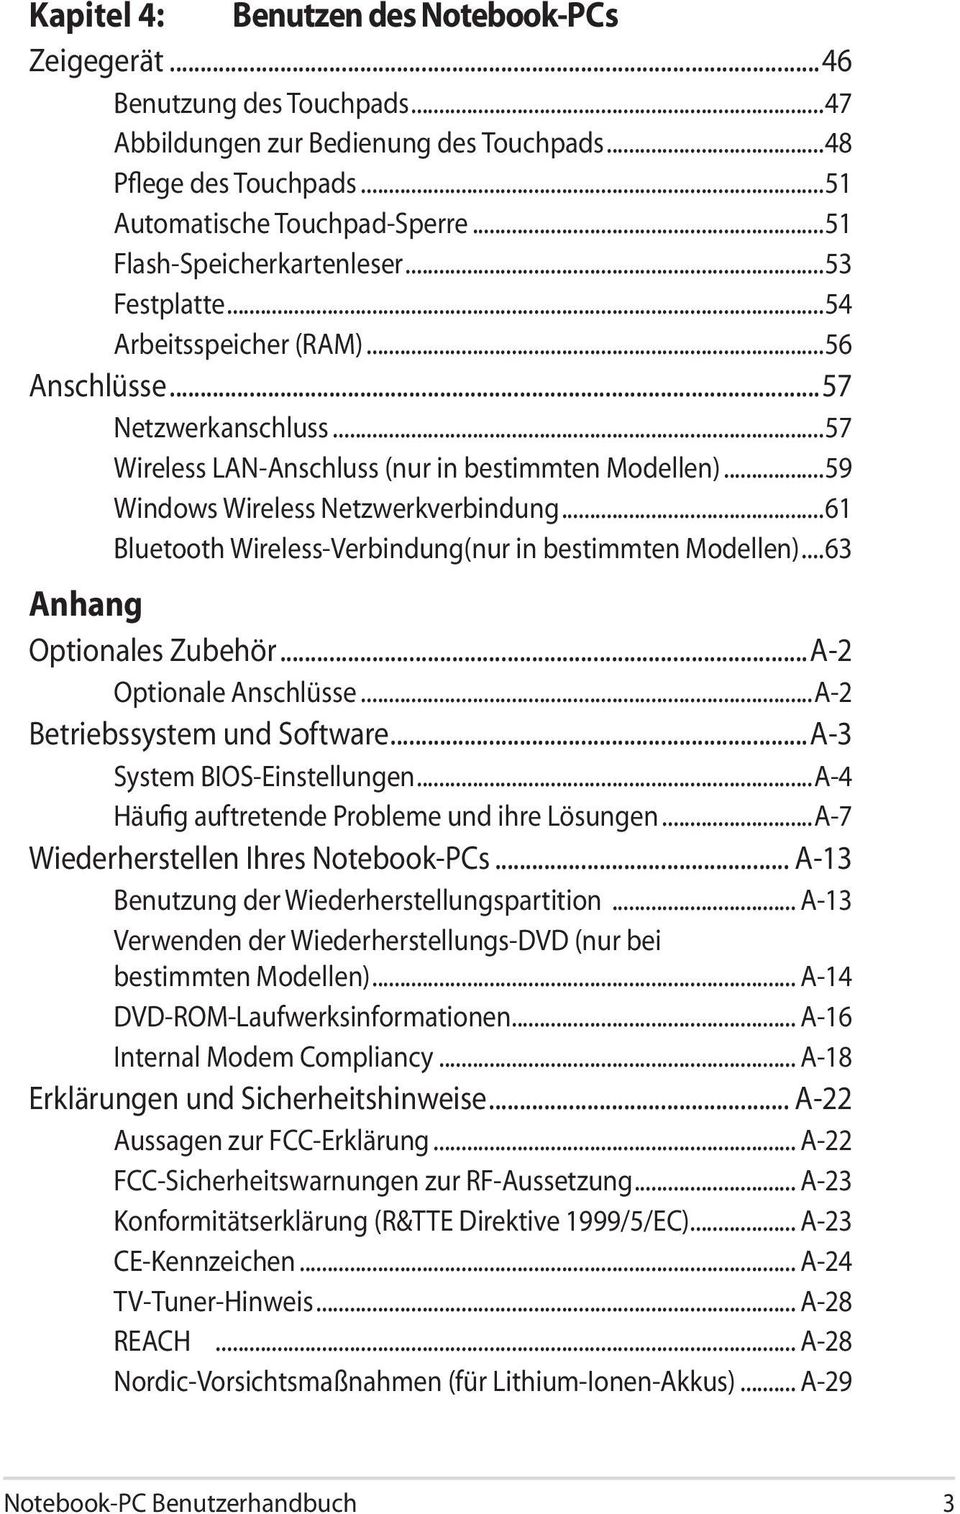 ..59 Windows Wireless Netzwerkverbindung...61 Bluetooth Wireless-Verbindung(nur in bestimmten Modellen)...63 Anhang Optionales Zubehör...A-2 Optionale Anschlüsse...A-2 Betriebssystem und Software.